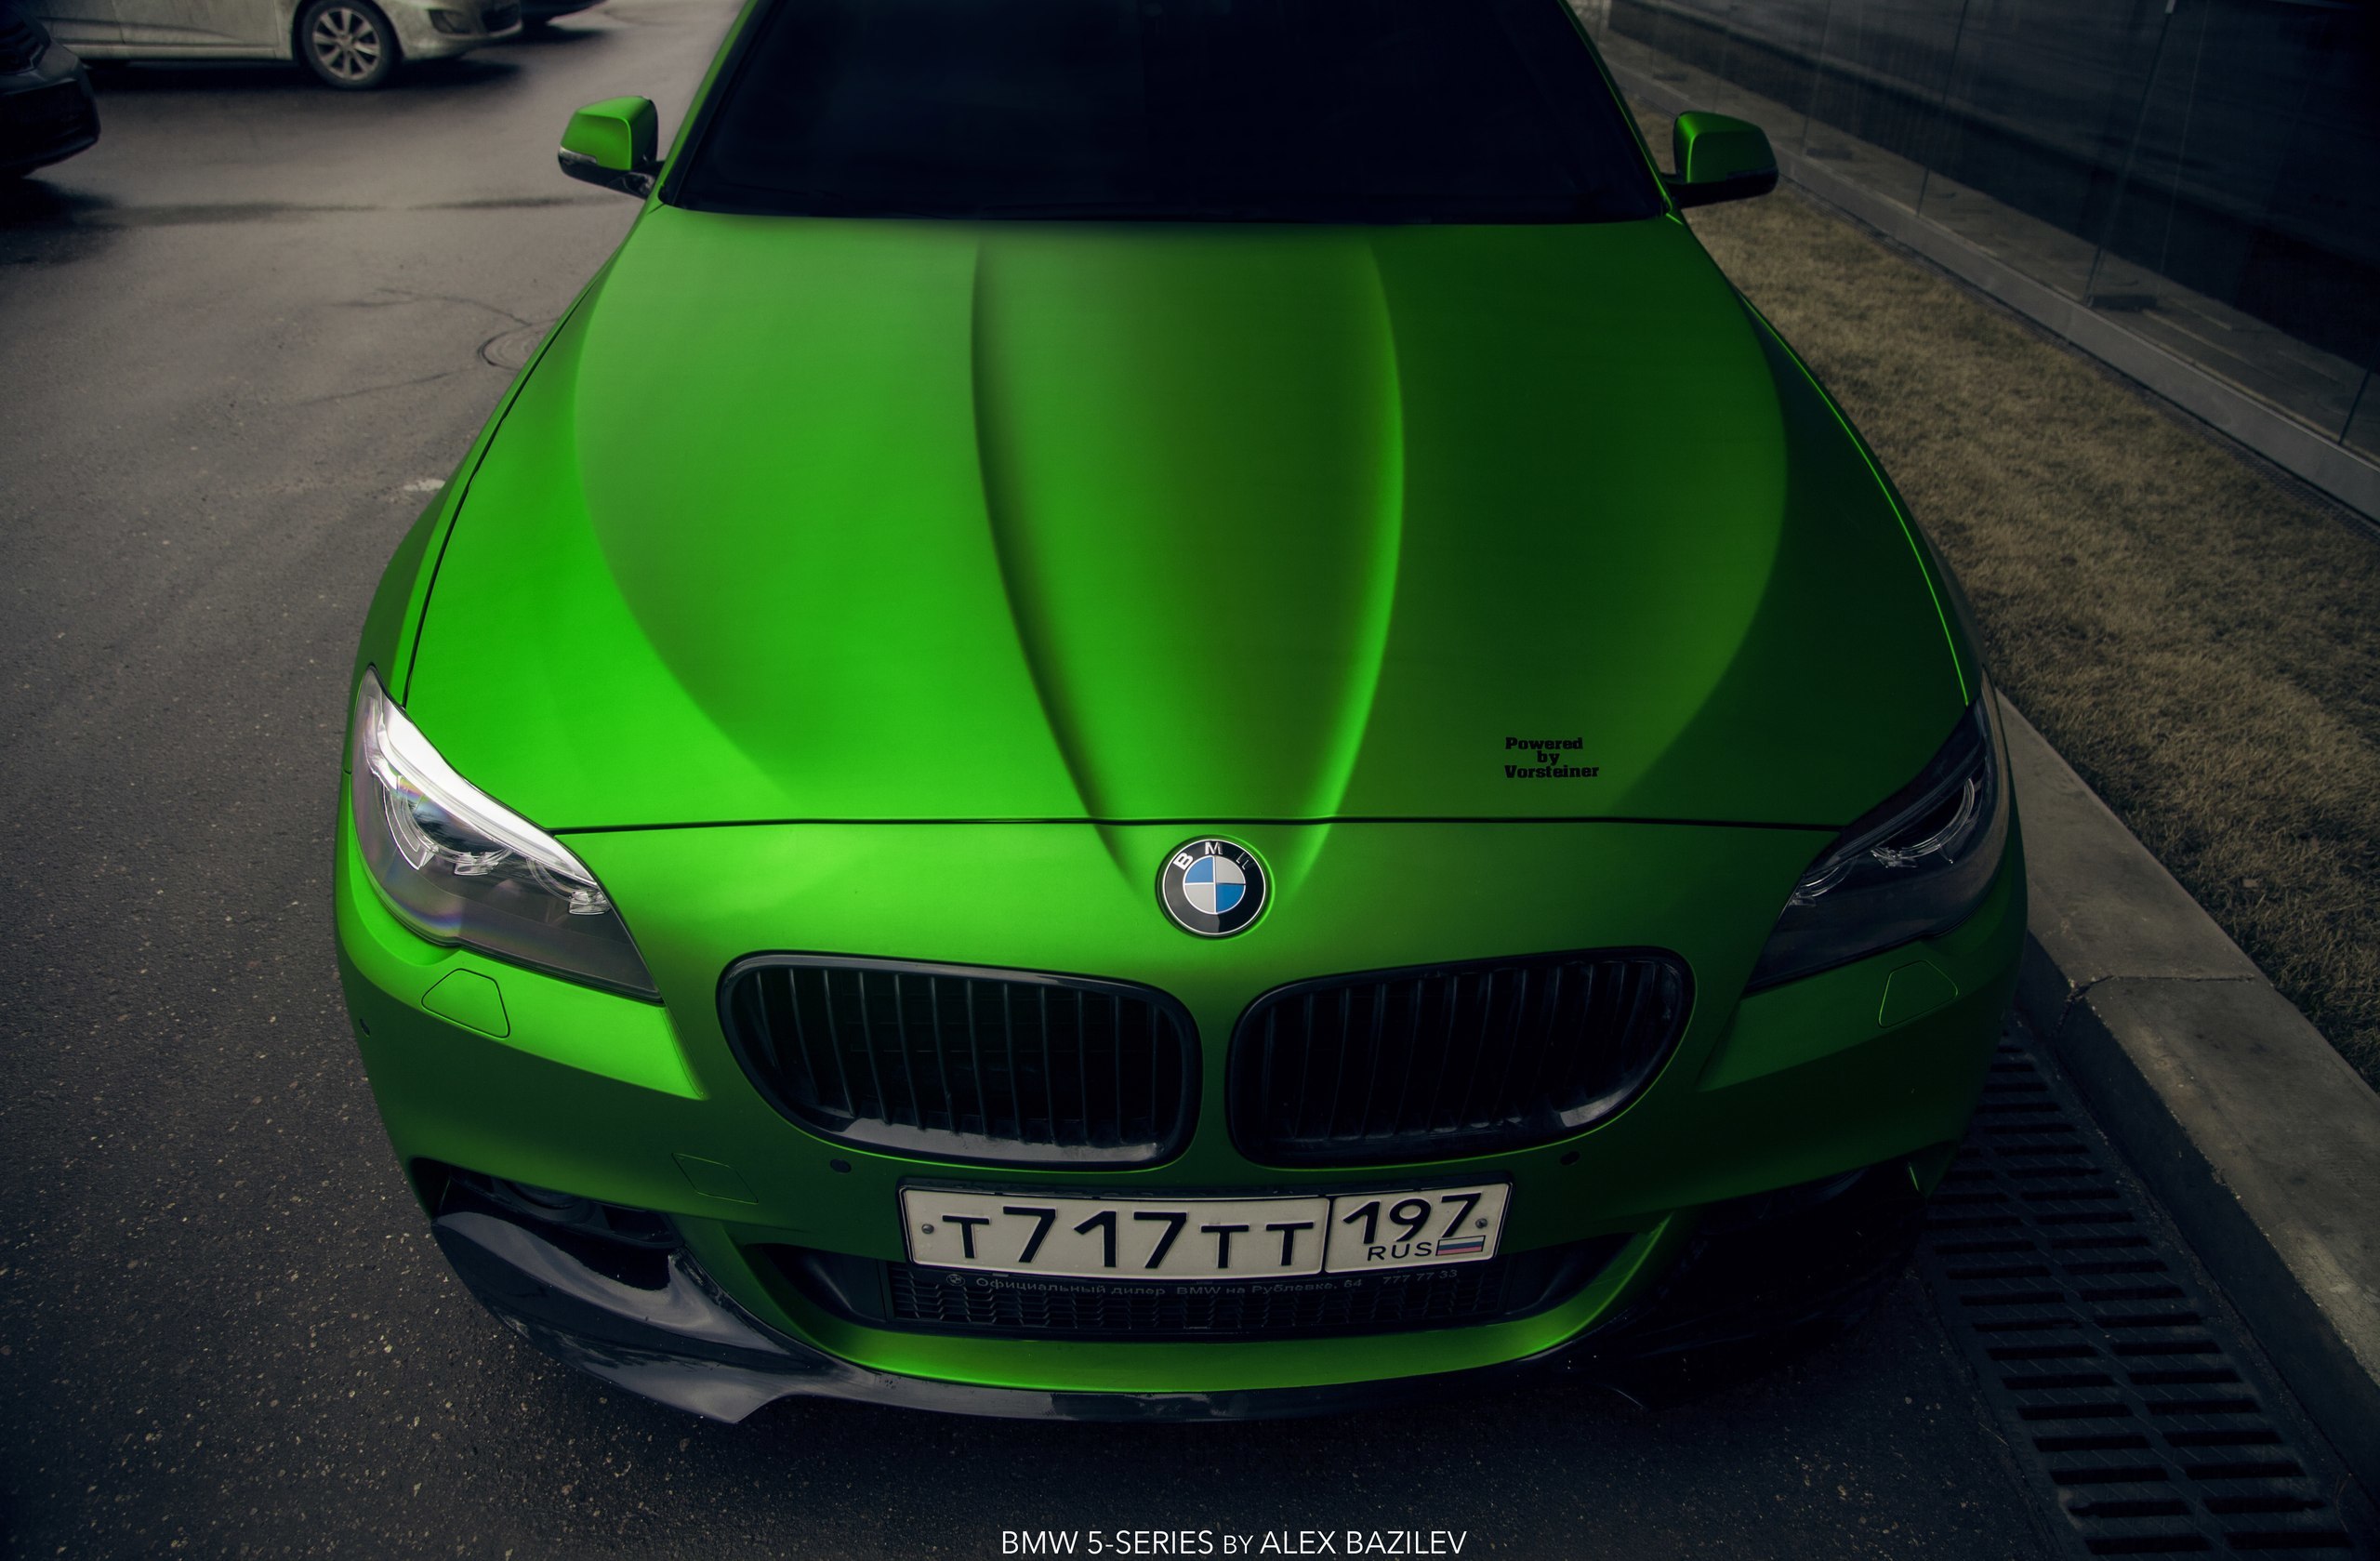 Включи темный зеленый. БМВ 5 темно зеленая. БМВ м5 голубая с зелёным. БМВ х7 салатовая. BMW f10 изумрудного цвета.